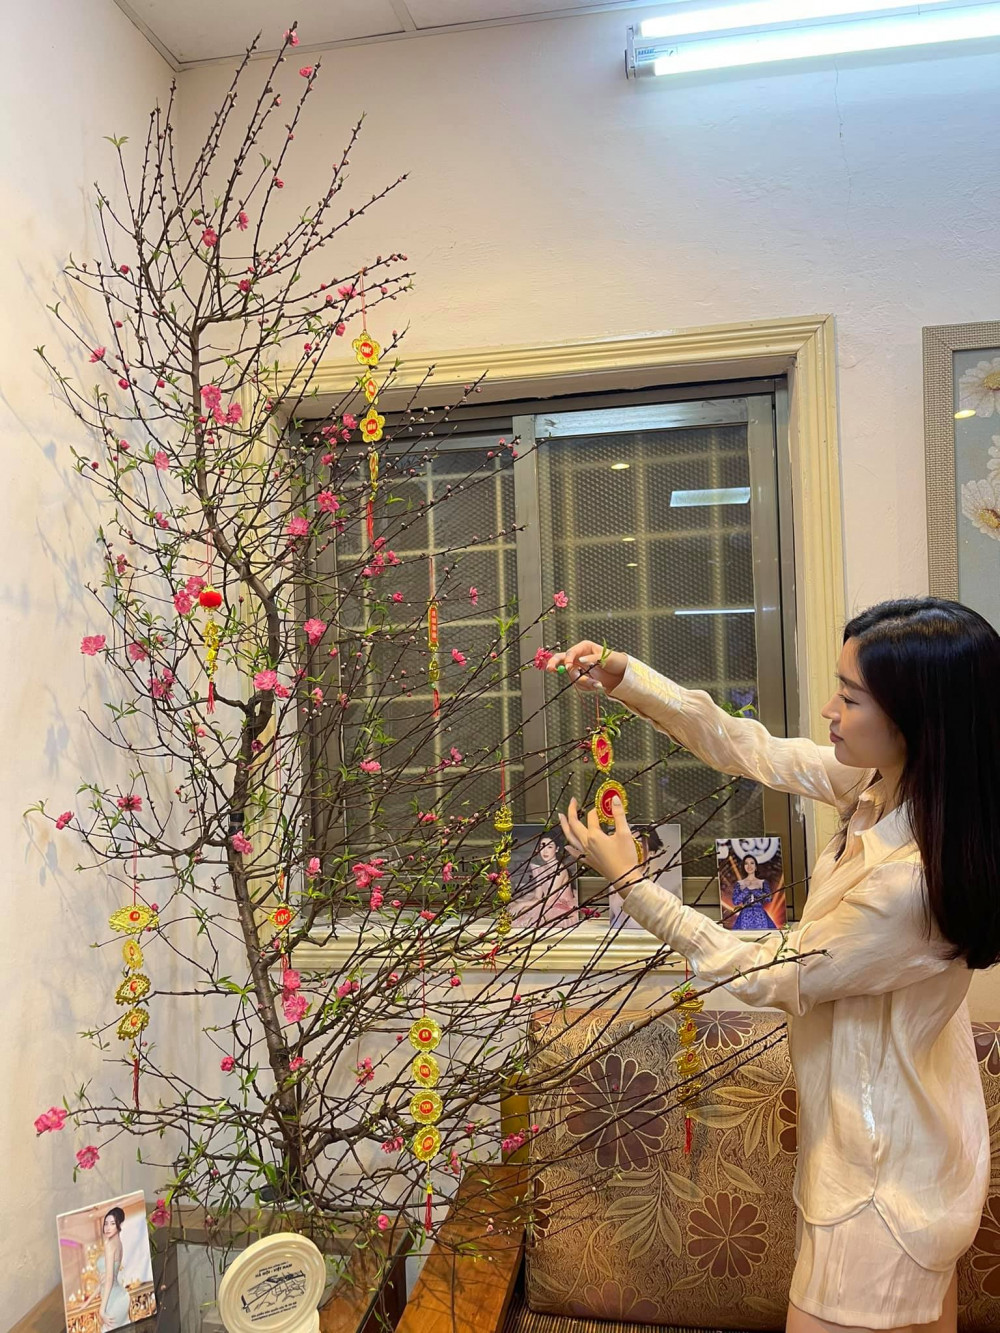 Hoa hậu Đỗ Mỹ Linh chăm chút lại cây hoa đào trong thời gian chờ giao thừa. Trước đó, người đẹp còn khoe phụ gia đình chuẩn bị mâm cơm cúng cuối năm.